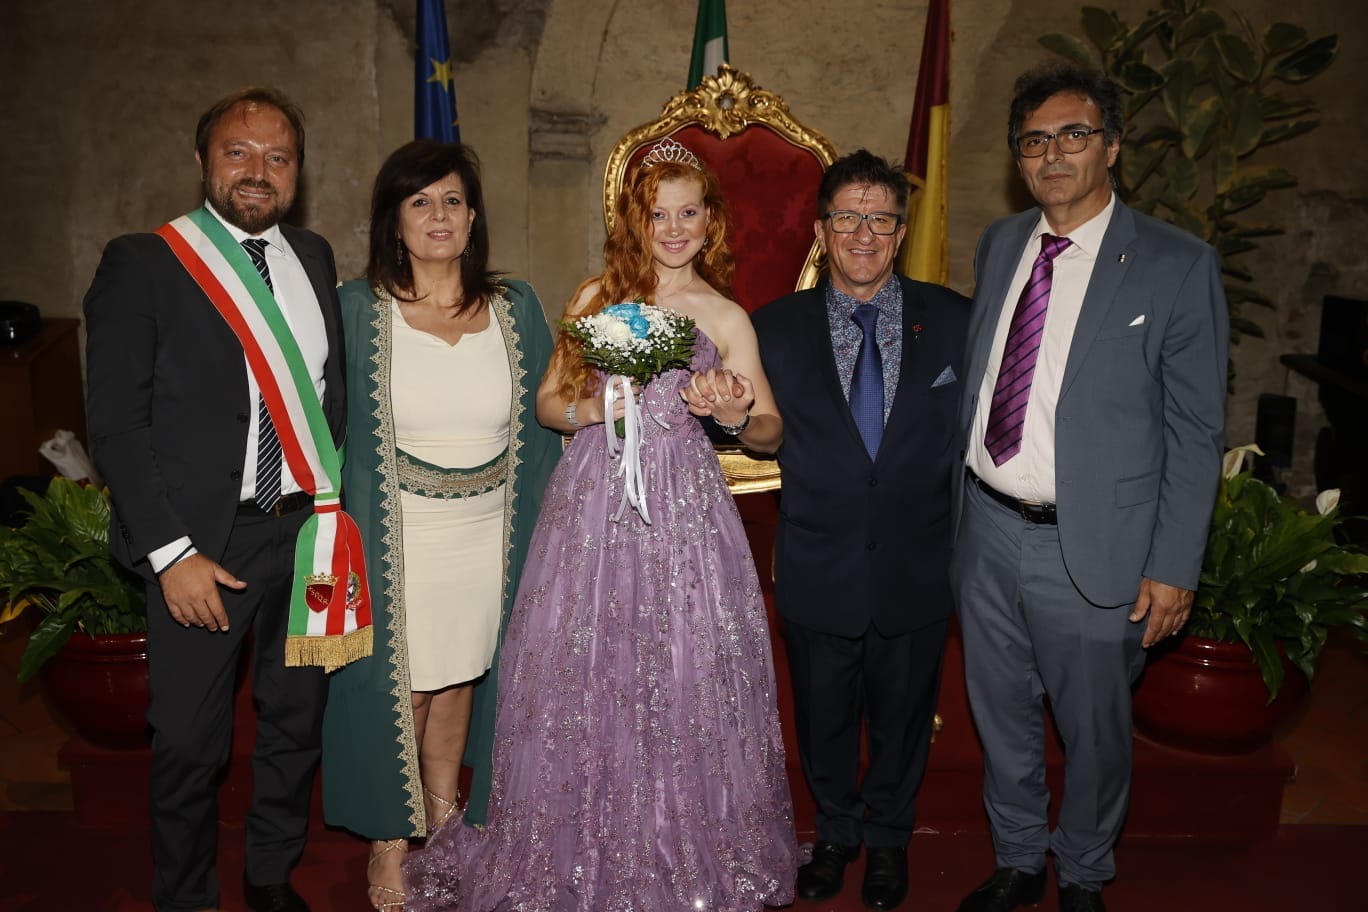 Il produttore cinematografico Gennaro Ruggiero e l'attrice Angelica Loredana Anton, sposi con rito civile alle Terme di Caracalla